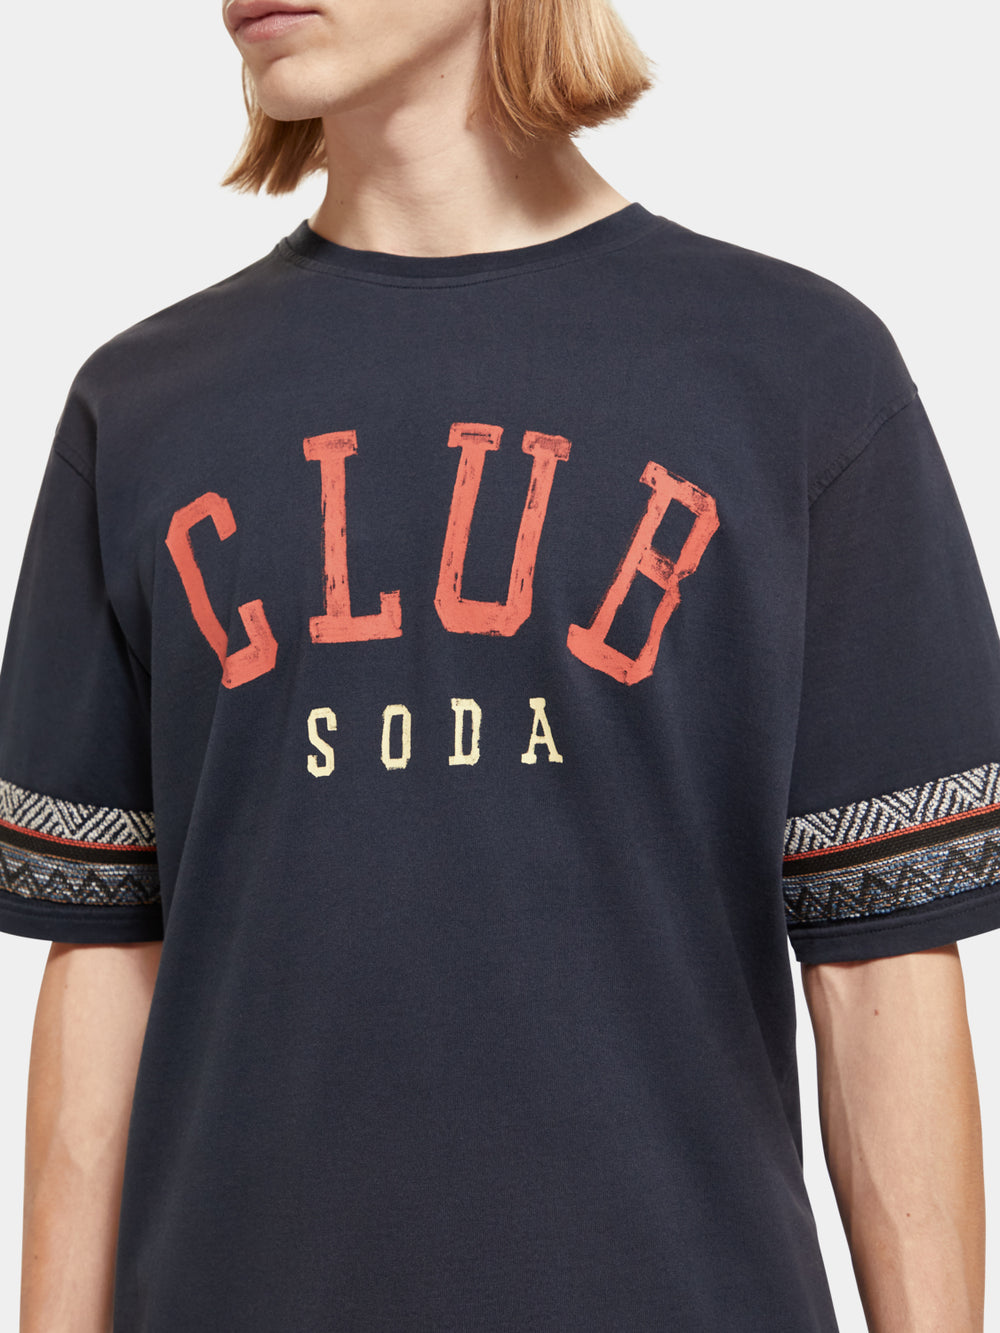 Relaxed-fit Club Soda t-shirt - Scotch & Soda NZ